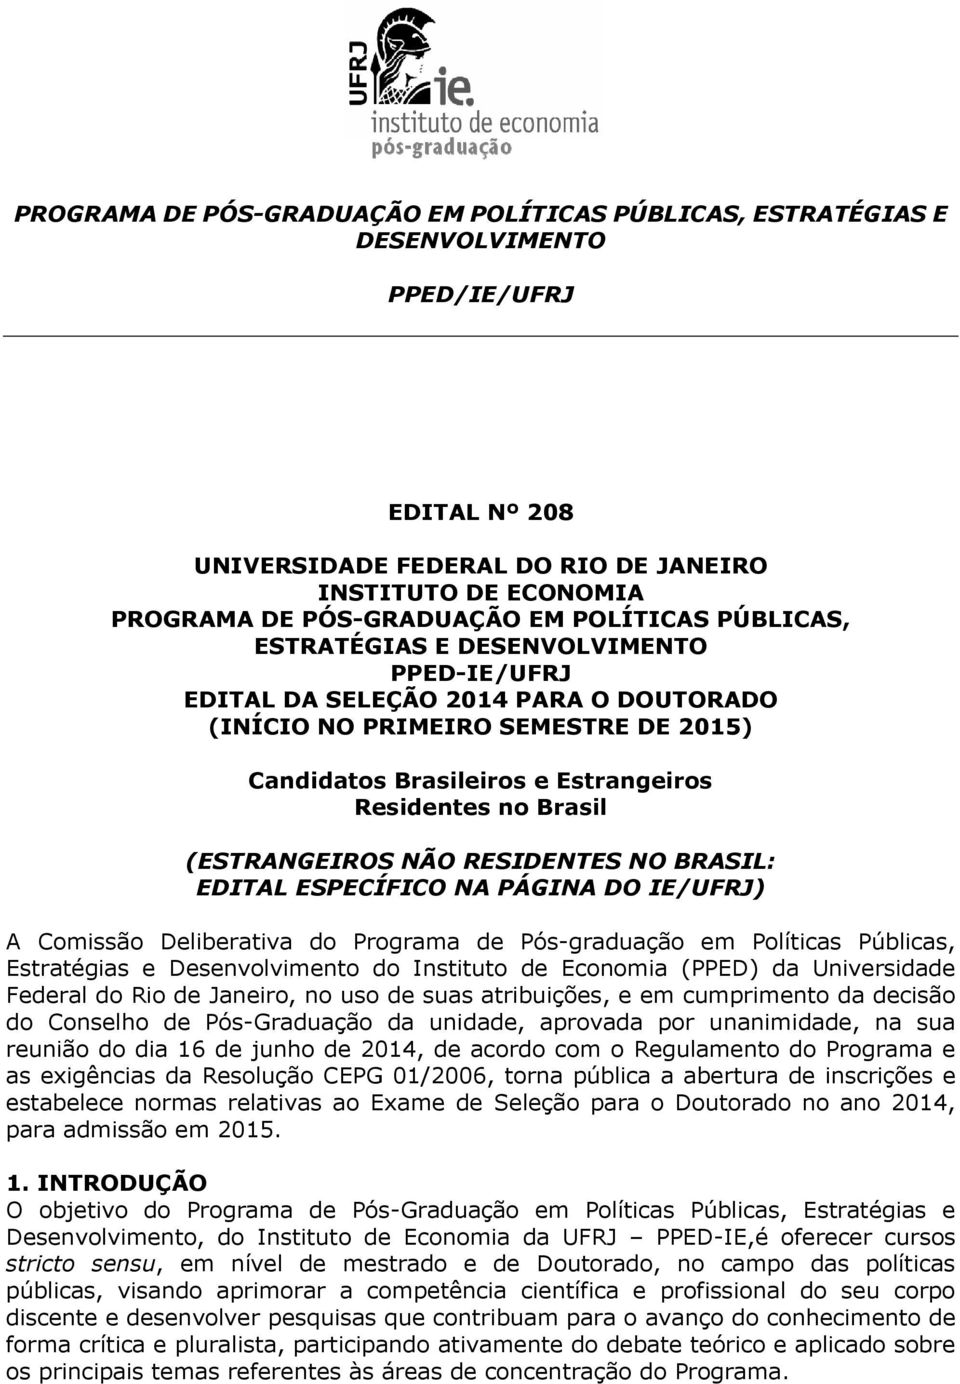 (ESTRANGEIROS NÃO RESIDENTES NO BRASIL: EDITAL ESPECÍFICO NA PÁGINA DO IE/UFRJ) A Comissão Deliberativa do Programa de Pós-graduação em Políticas Públicas, Estratégias e Desenvolvimento do Instituto